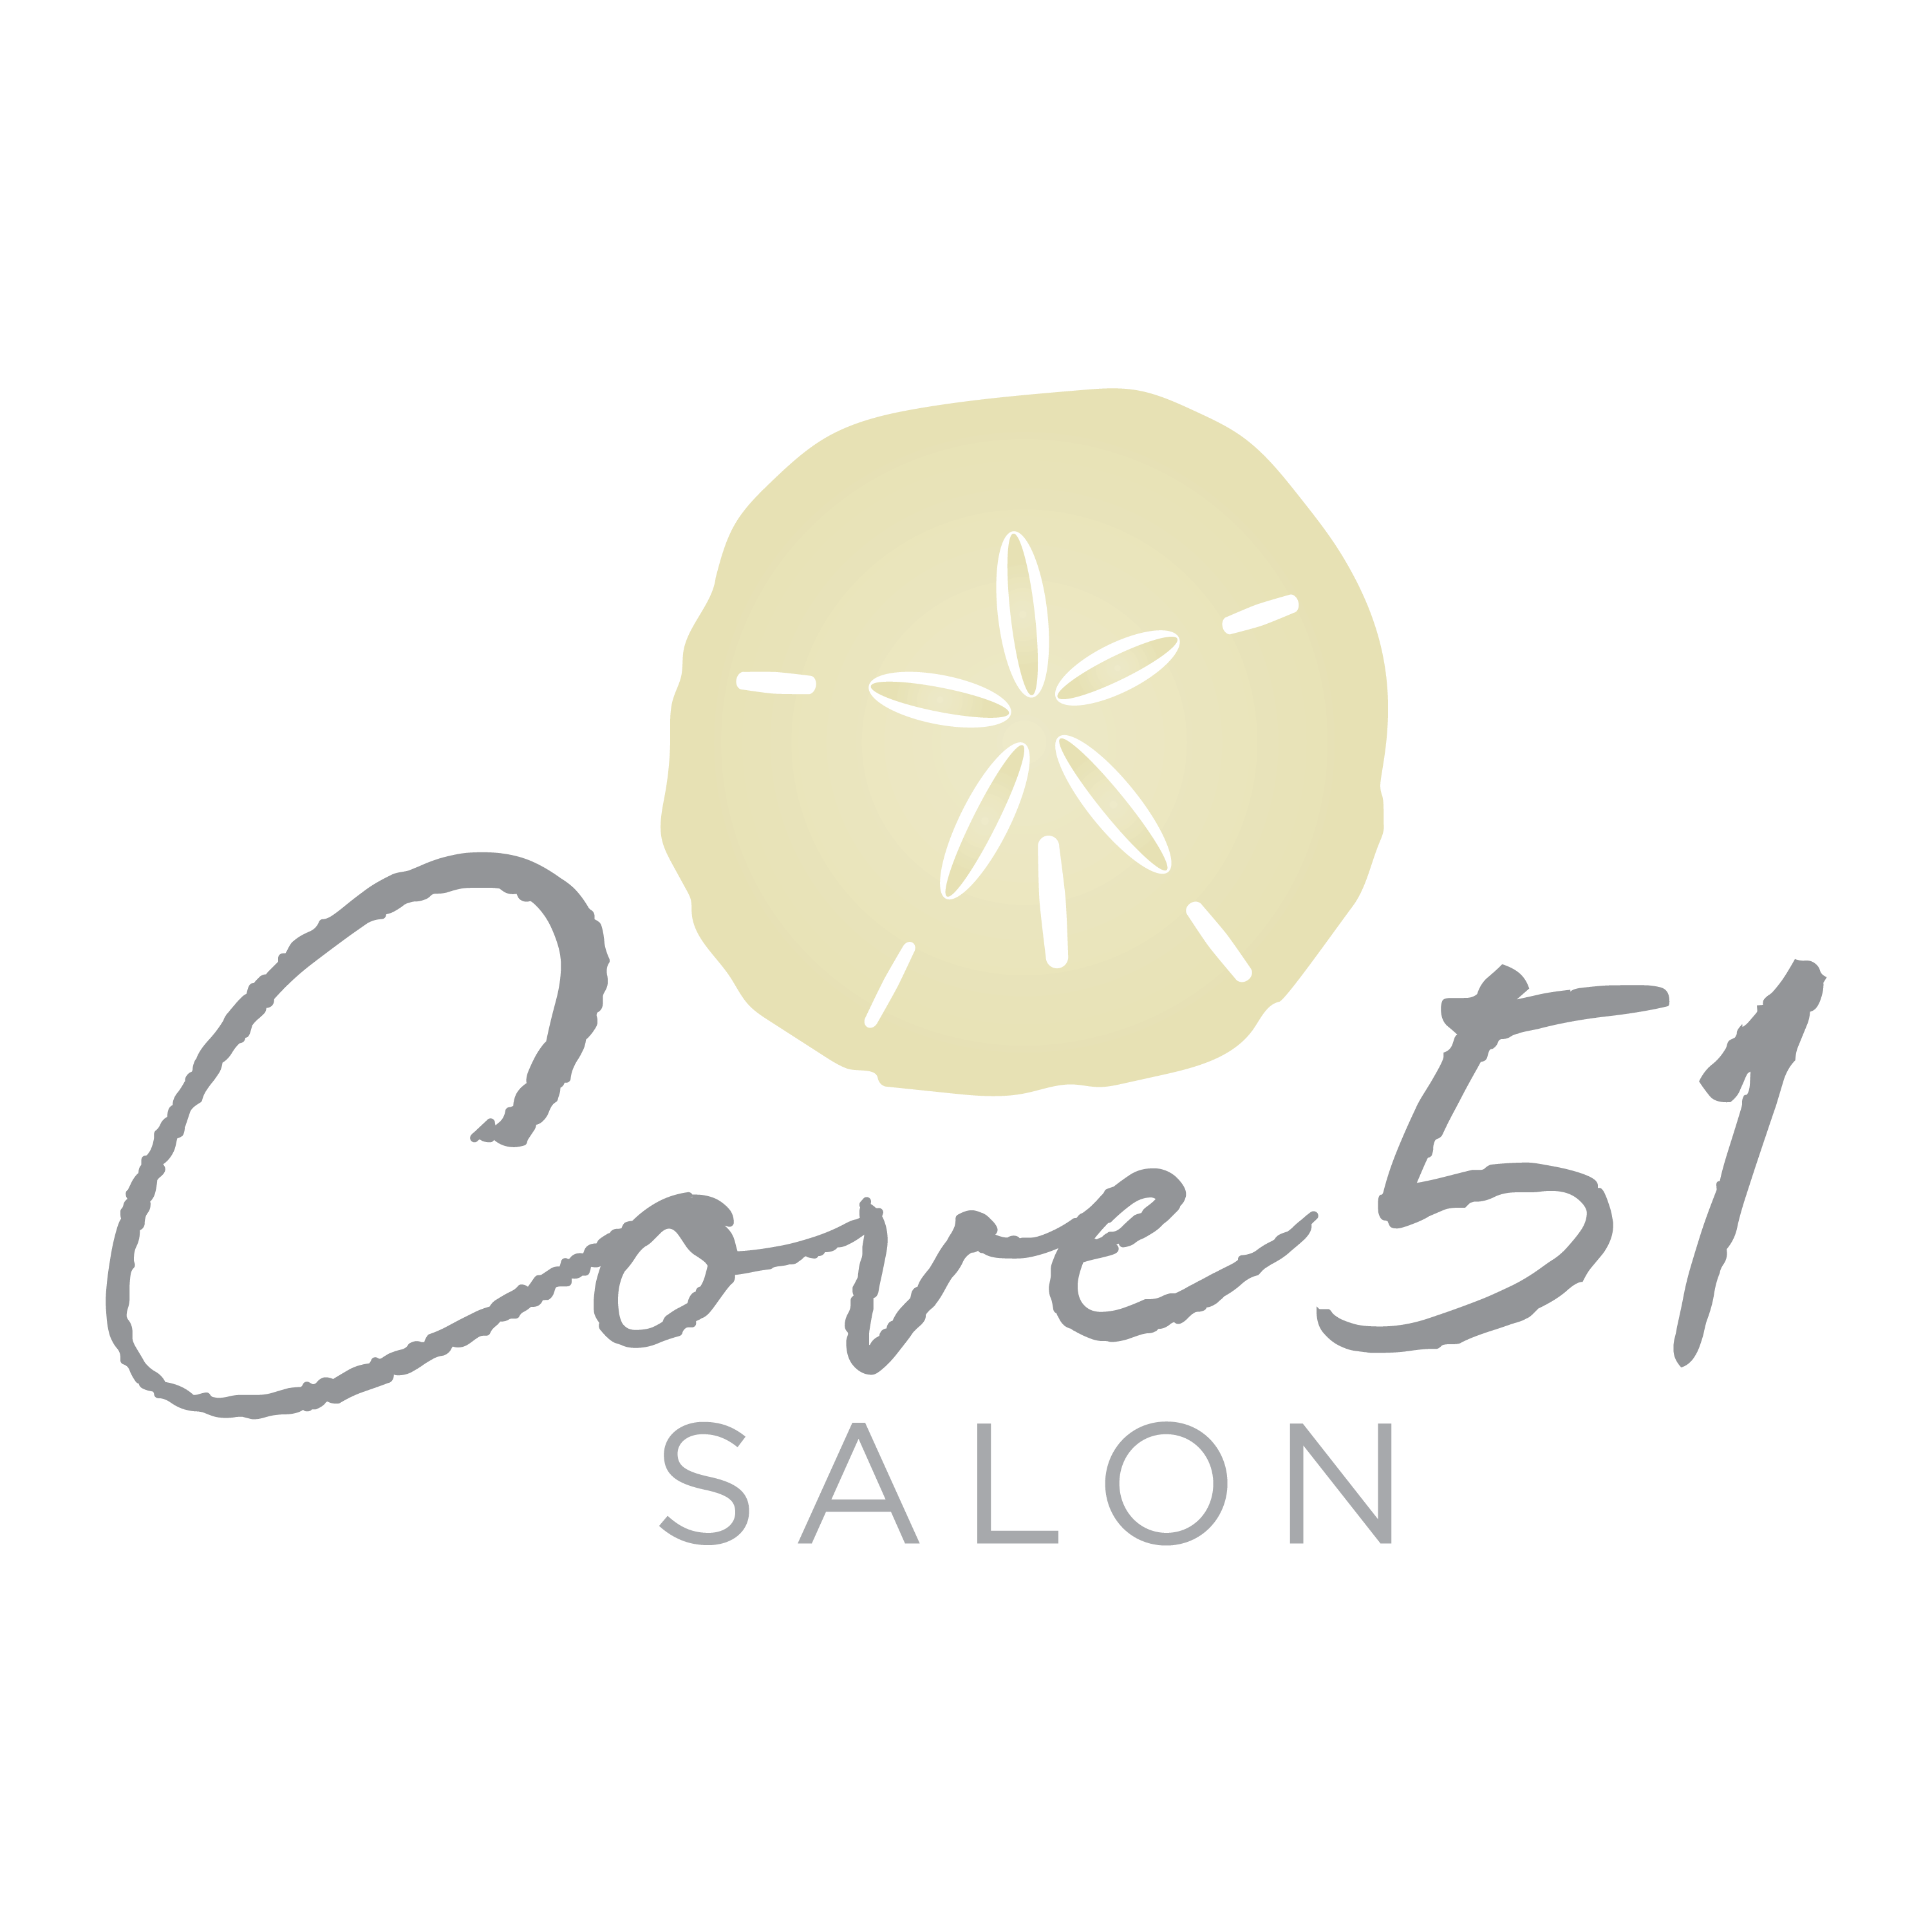 Cove51 Salon